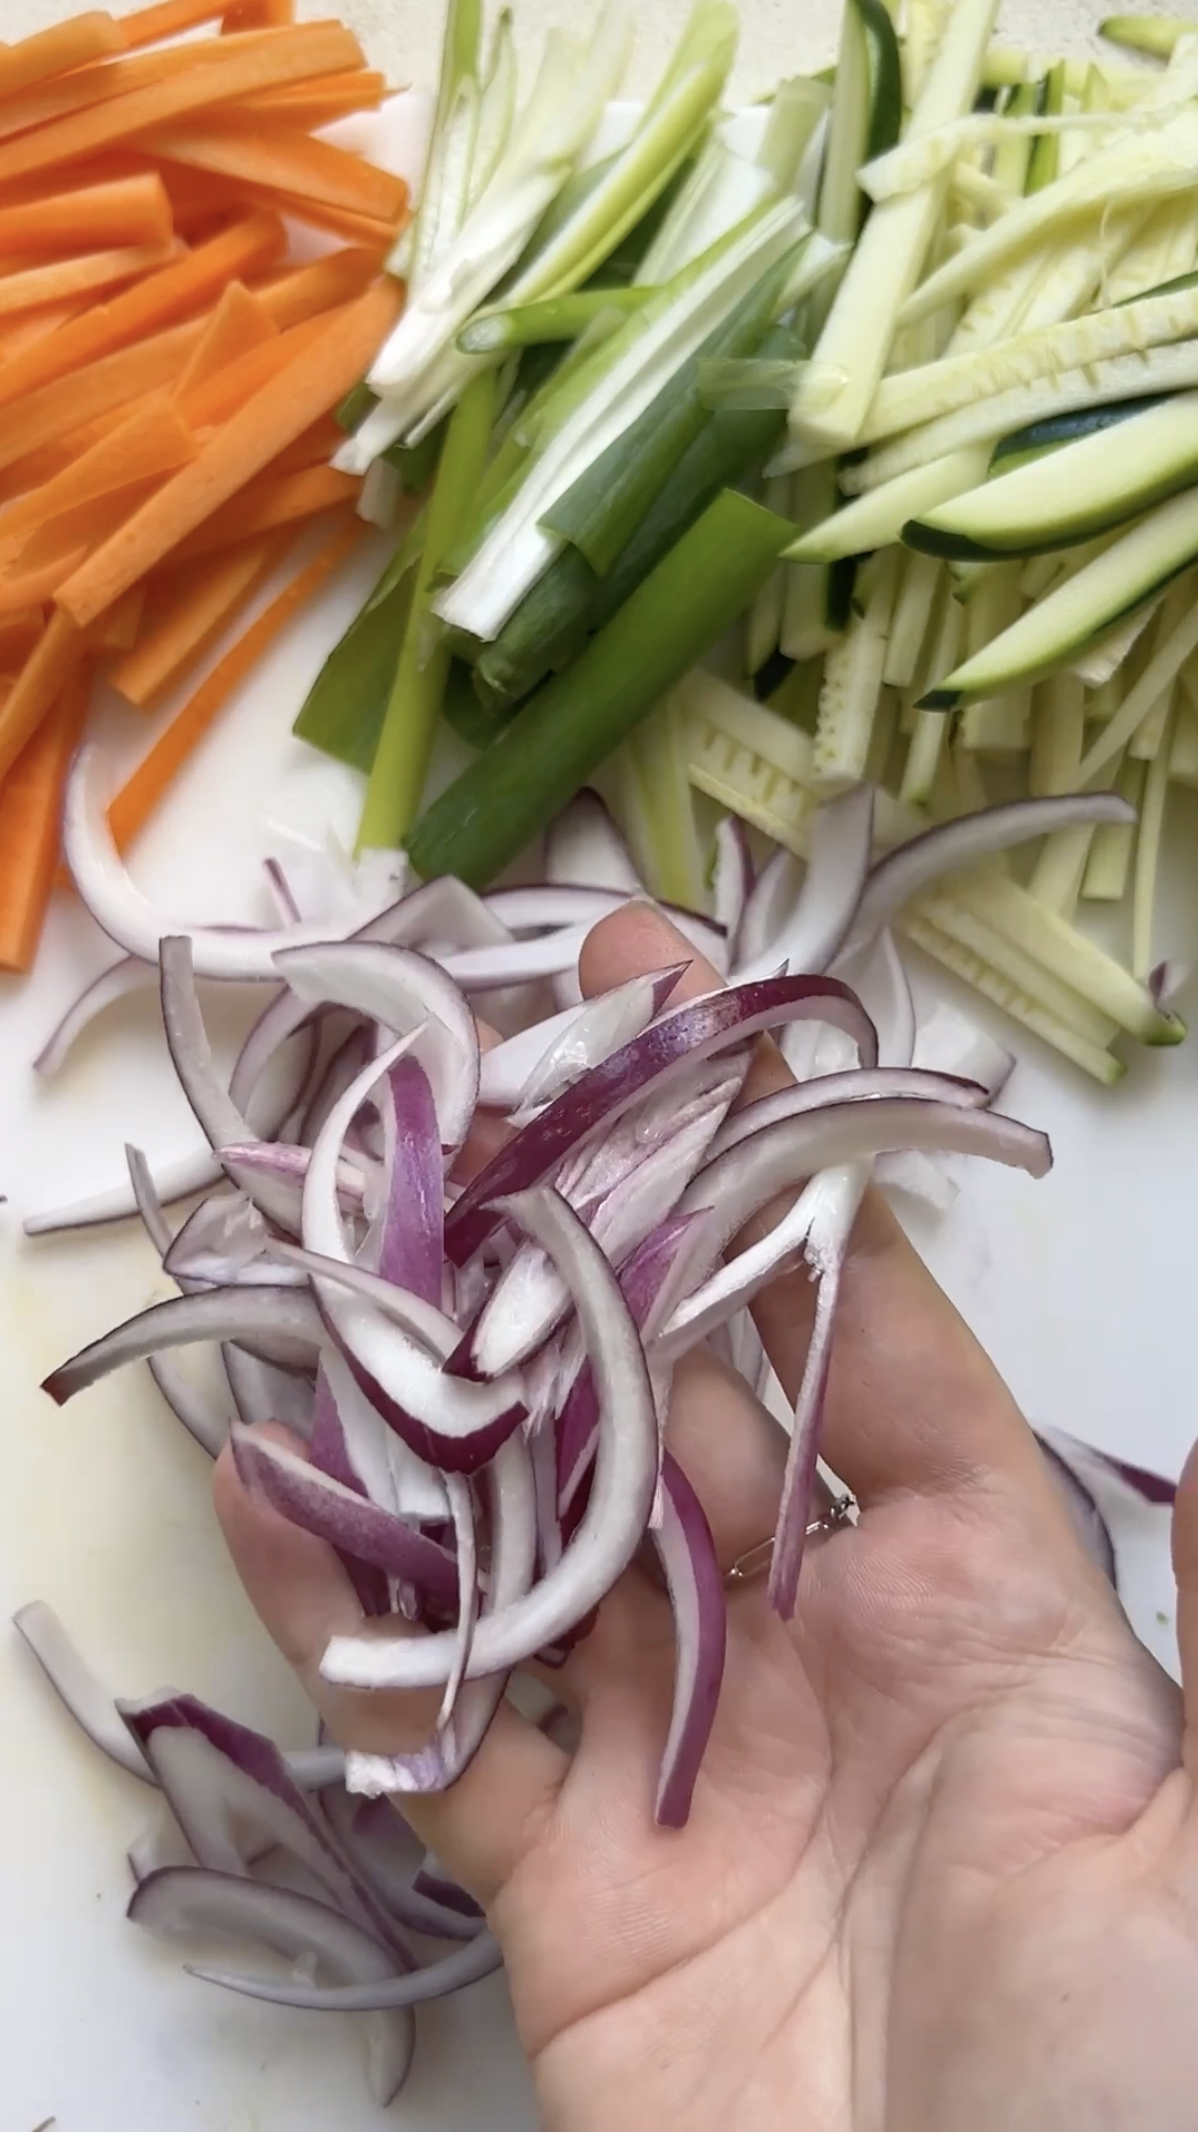 Légumes coupés en fins bâtonnets.